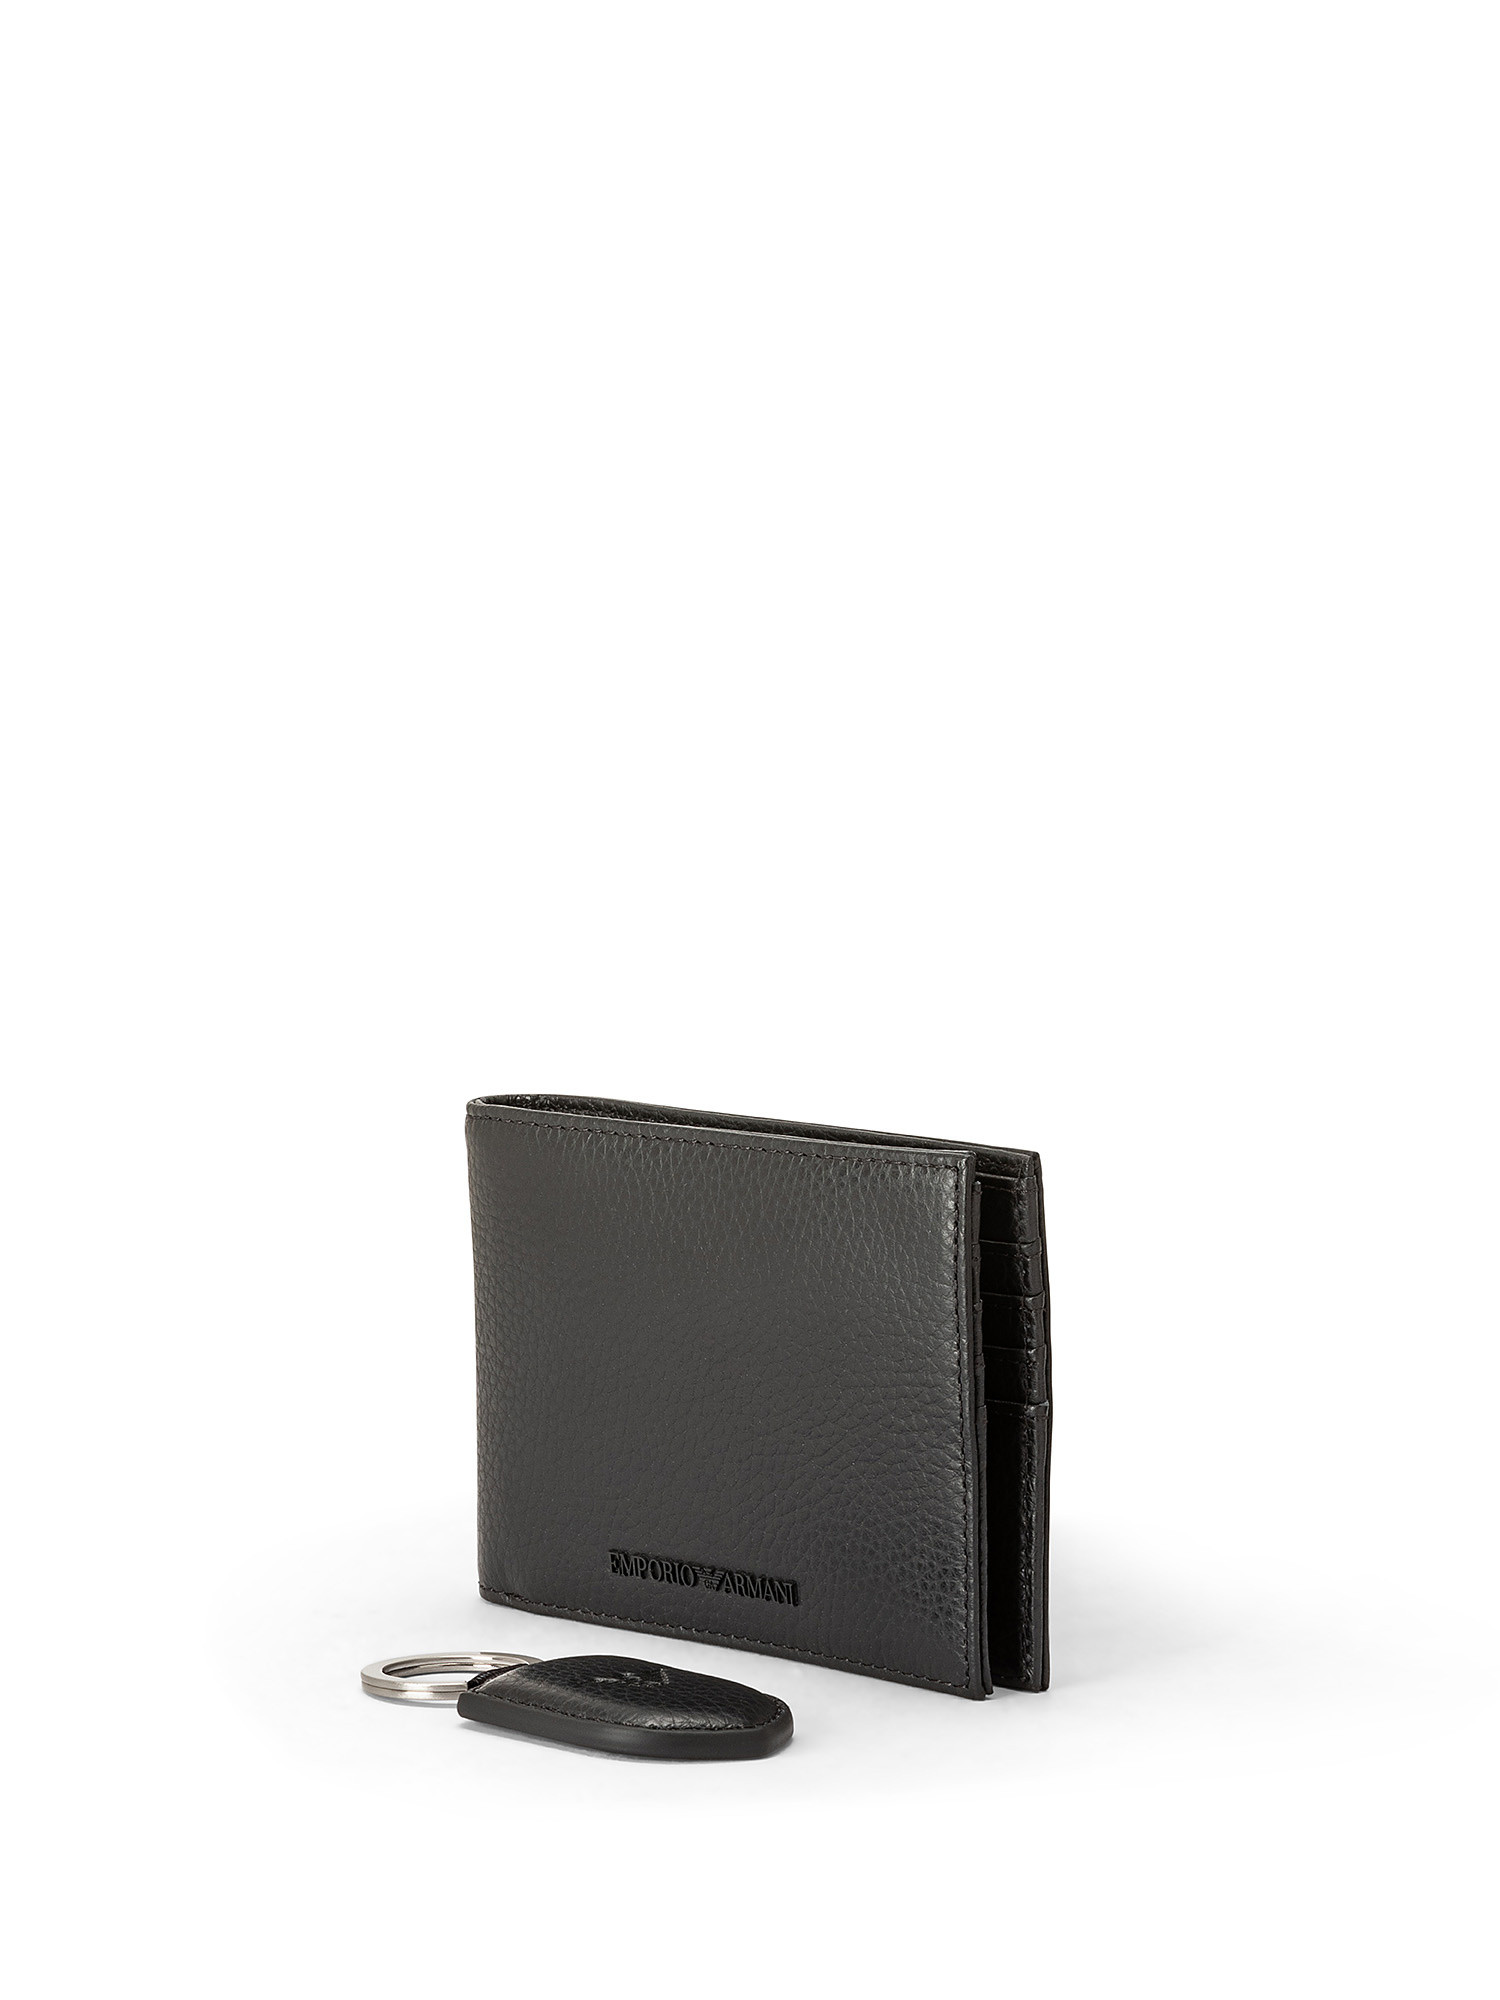 Emporio Armani - Gift box con portafoglio e portachiavi in pelle bottalata, Nero, large image number 1